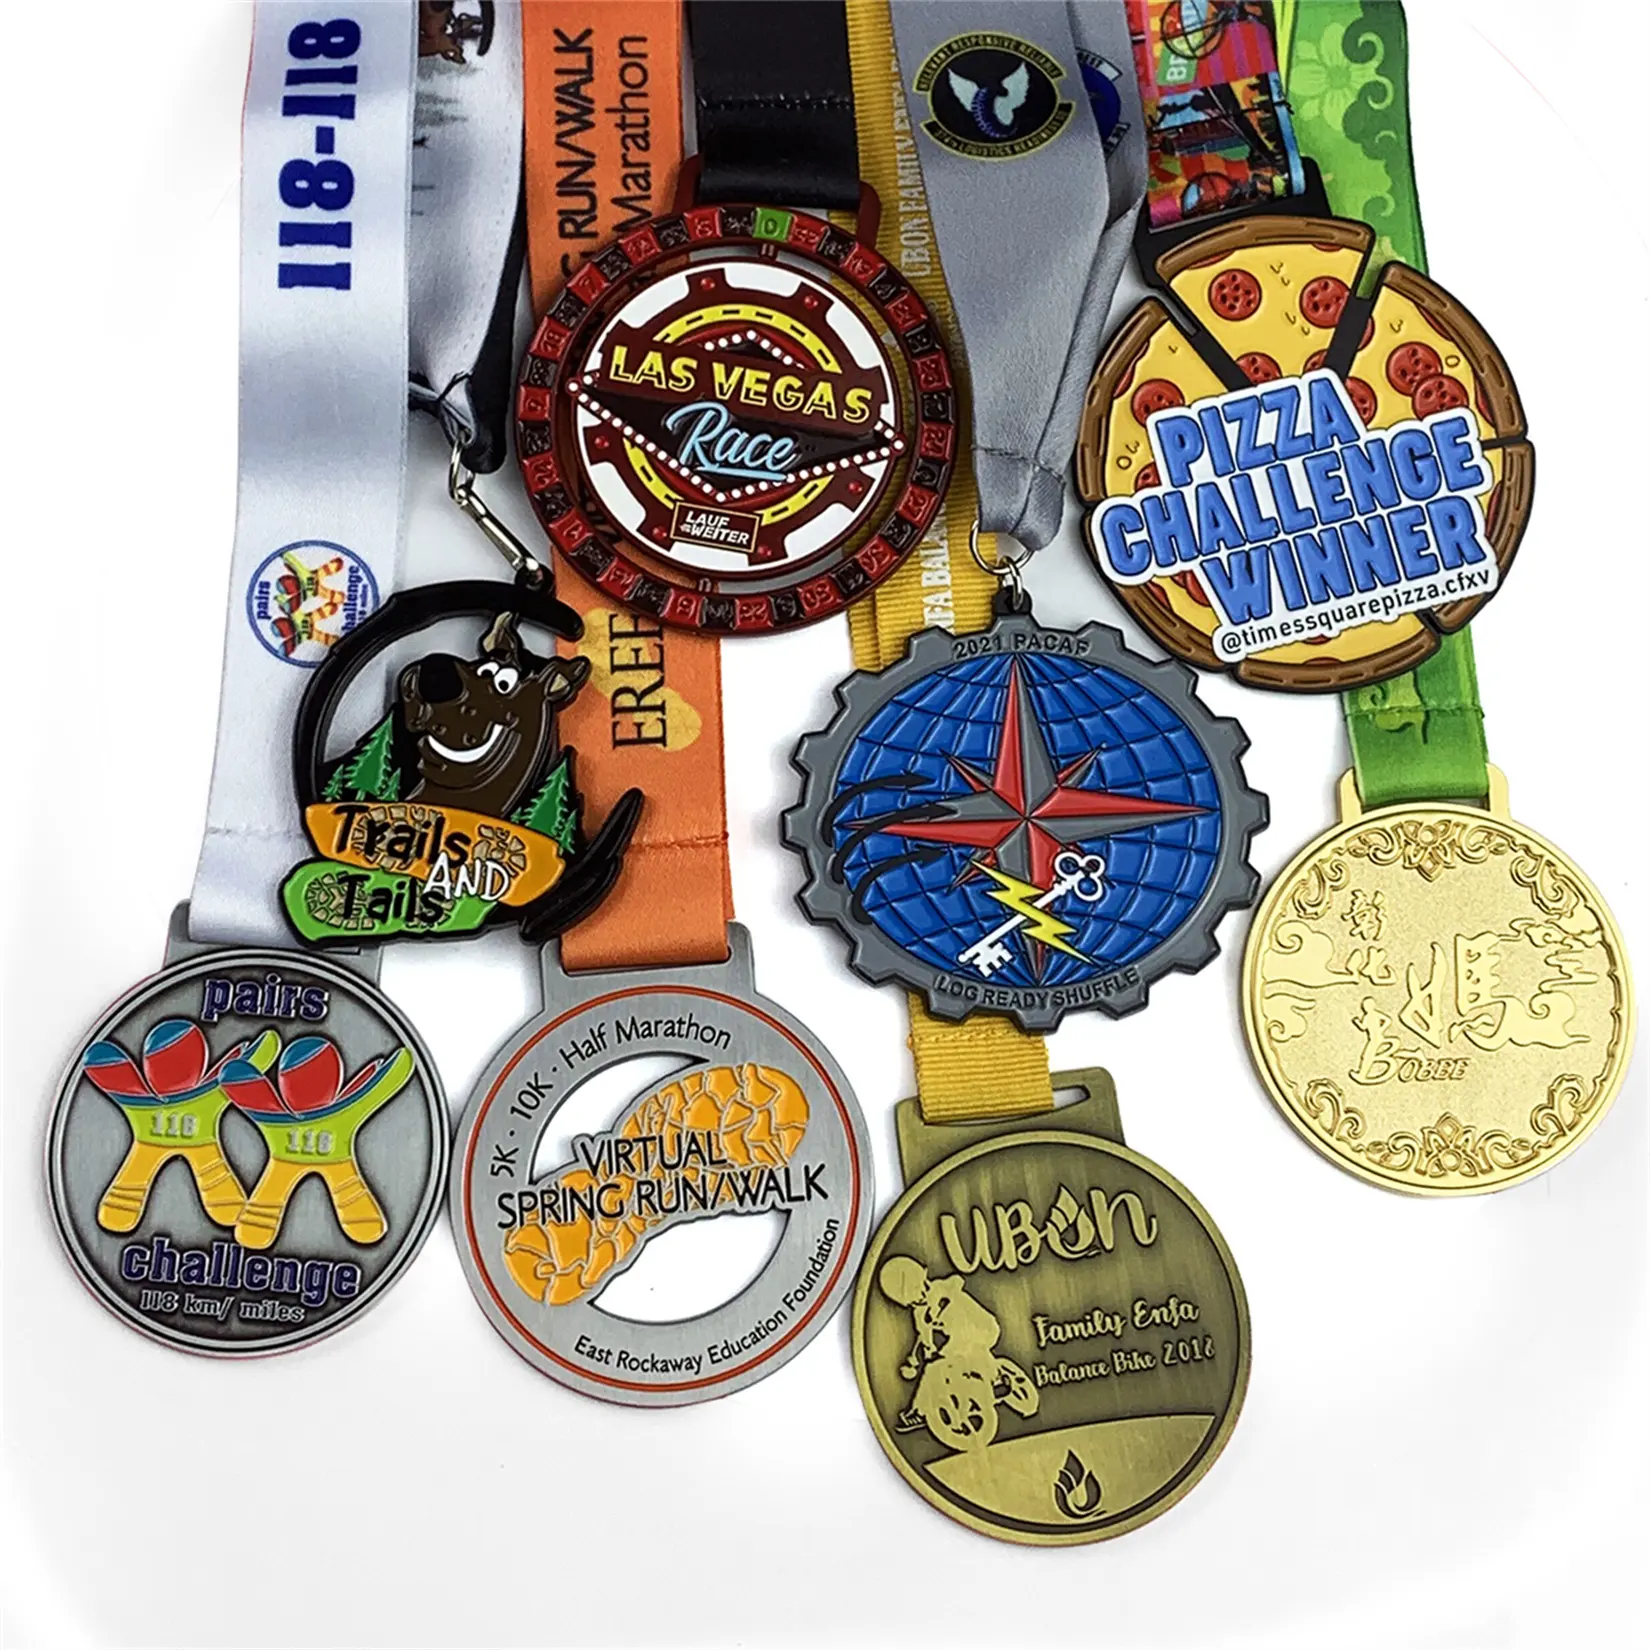 メダルは昇華奇跡のマラソンレースフィニッシャー5Kランニングメタルランアワードカスタムスポーツメダルリボン付きを製造しています